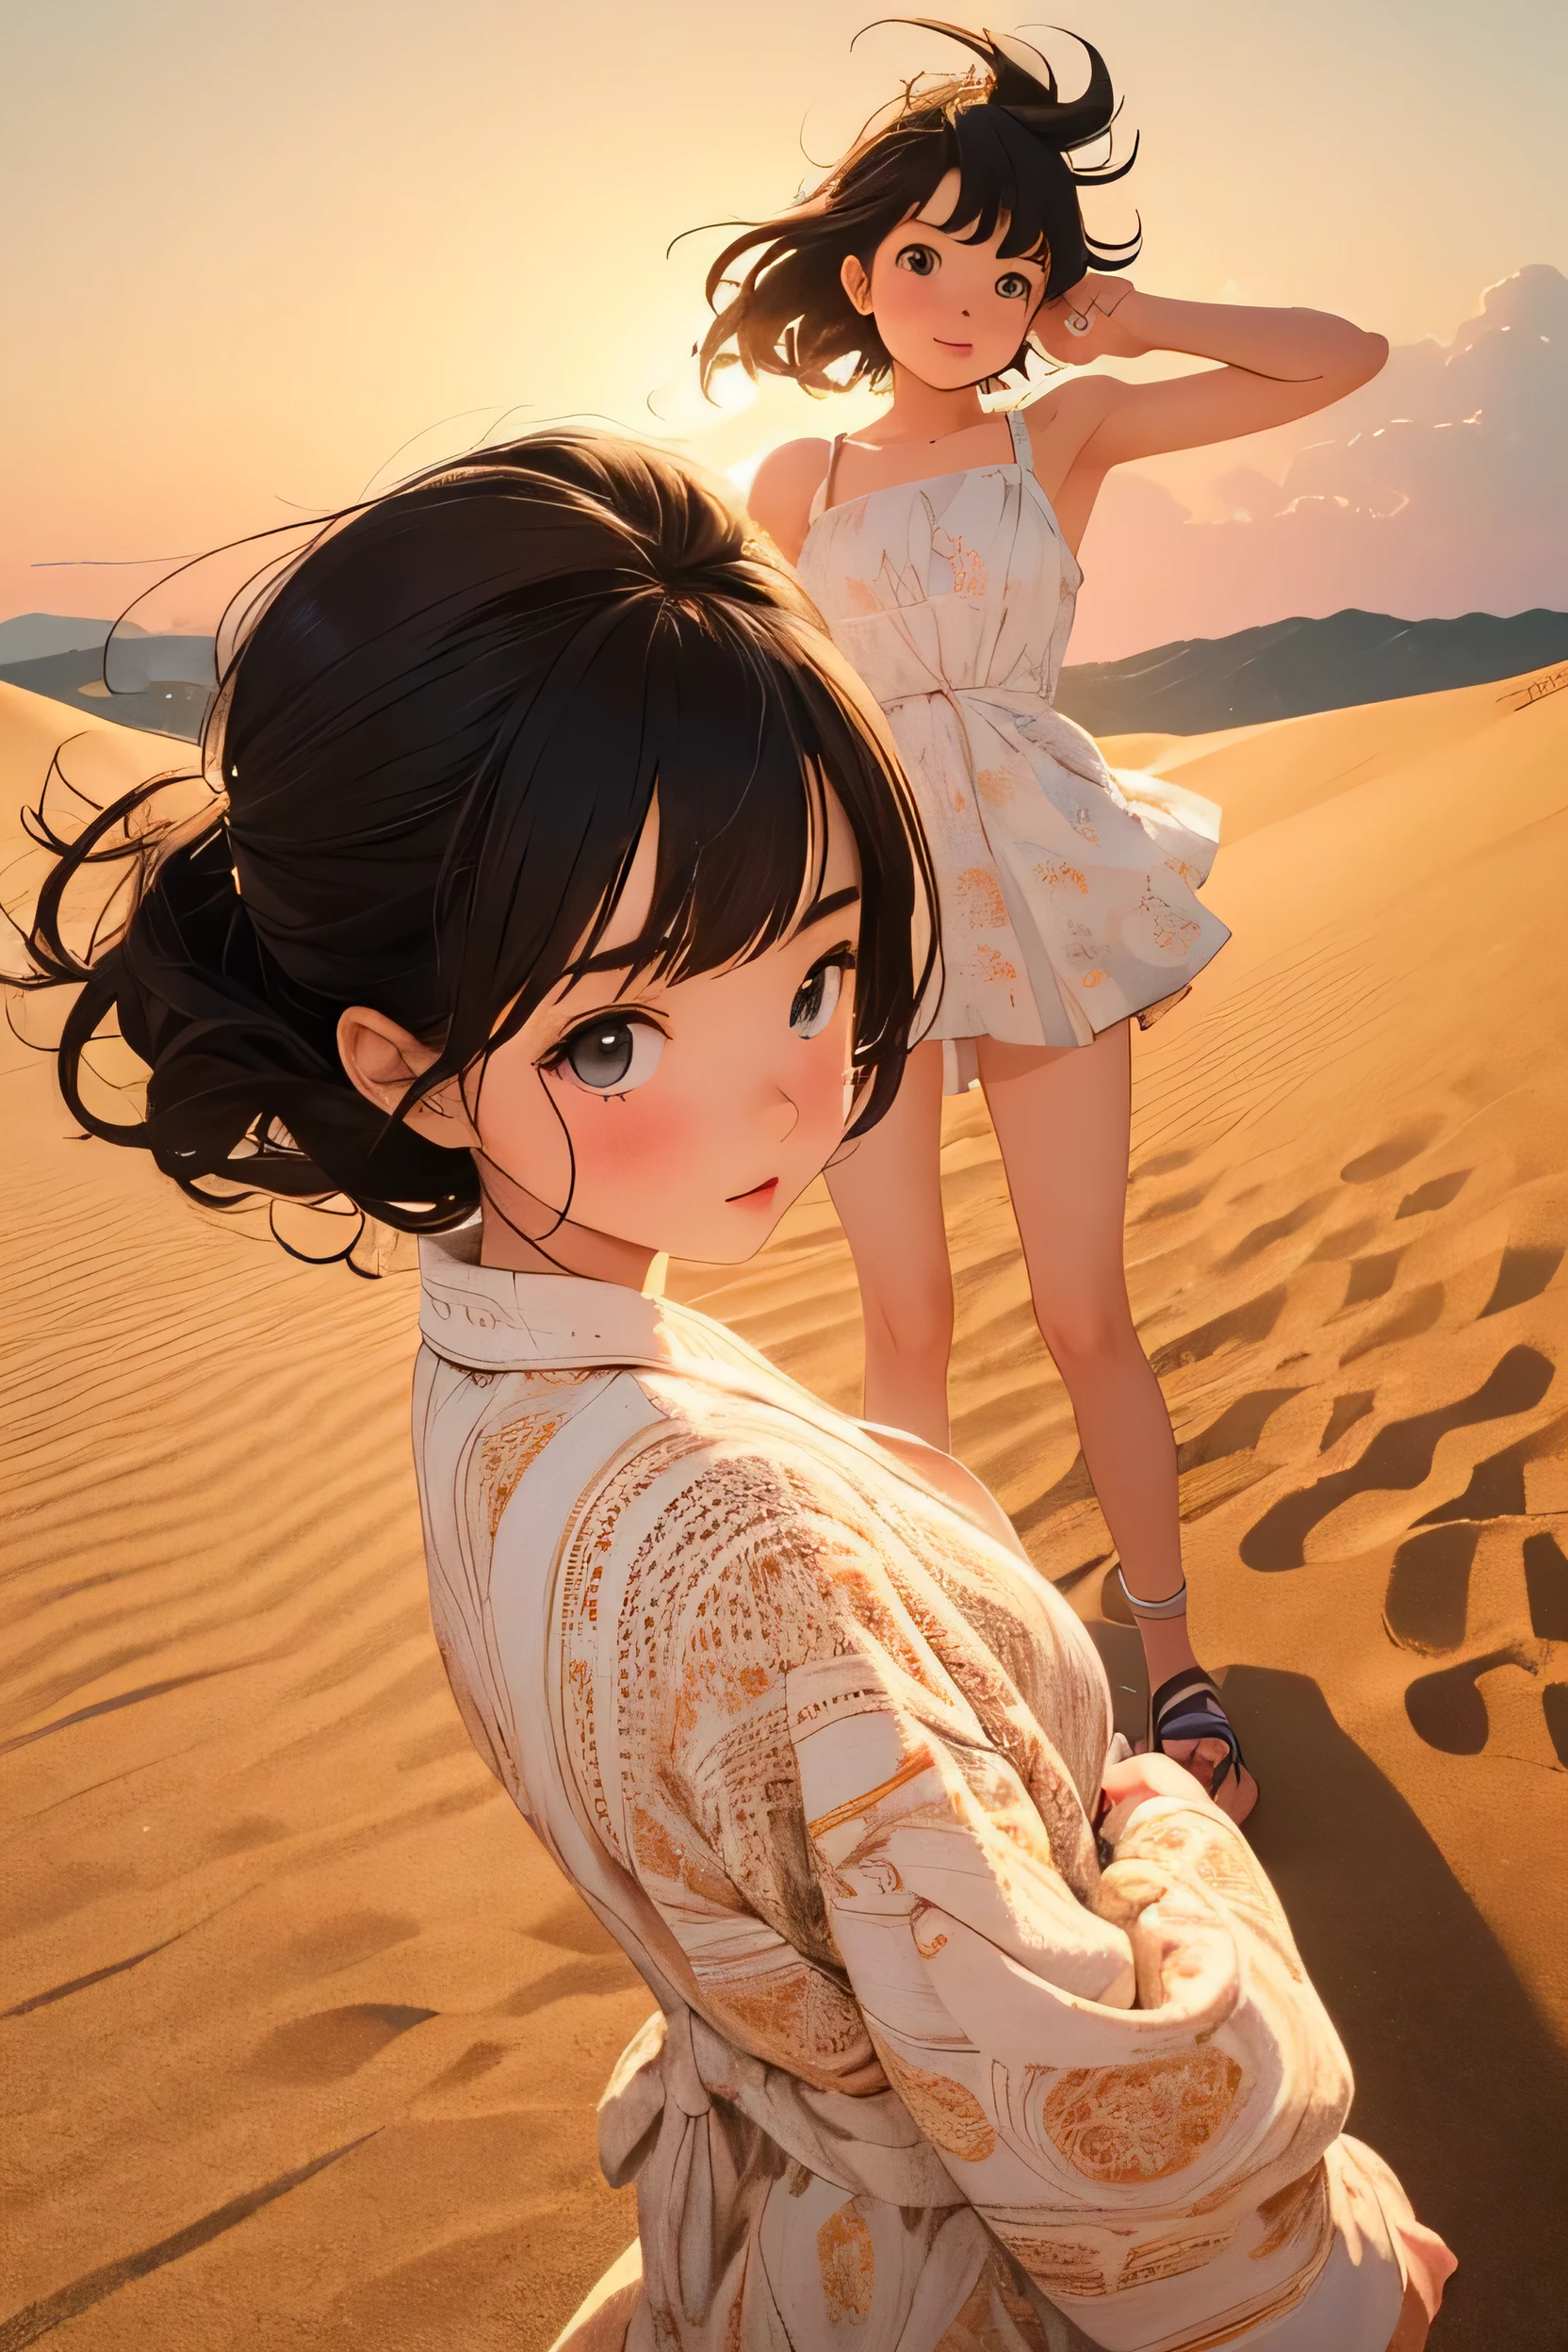 (шедевр, высшее качество:1.1), (Стиль Попарт),плоский цвет,(двух девушек),милое лицо,подросток,Желаю хорошей поездки,(Песчаные дюны Тоттори)，Япония, красивые детализированные пейзажи, красивое освещение,очень счастлив,динамичная поза,портретная фотография, острый,Иллюстрация：нечитаемый,